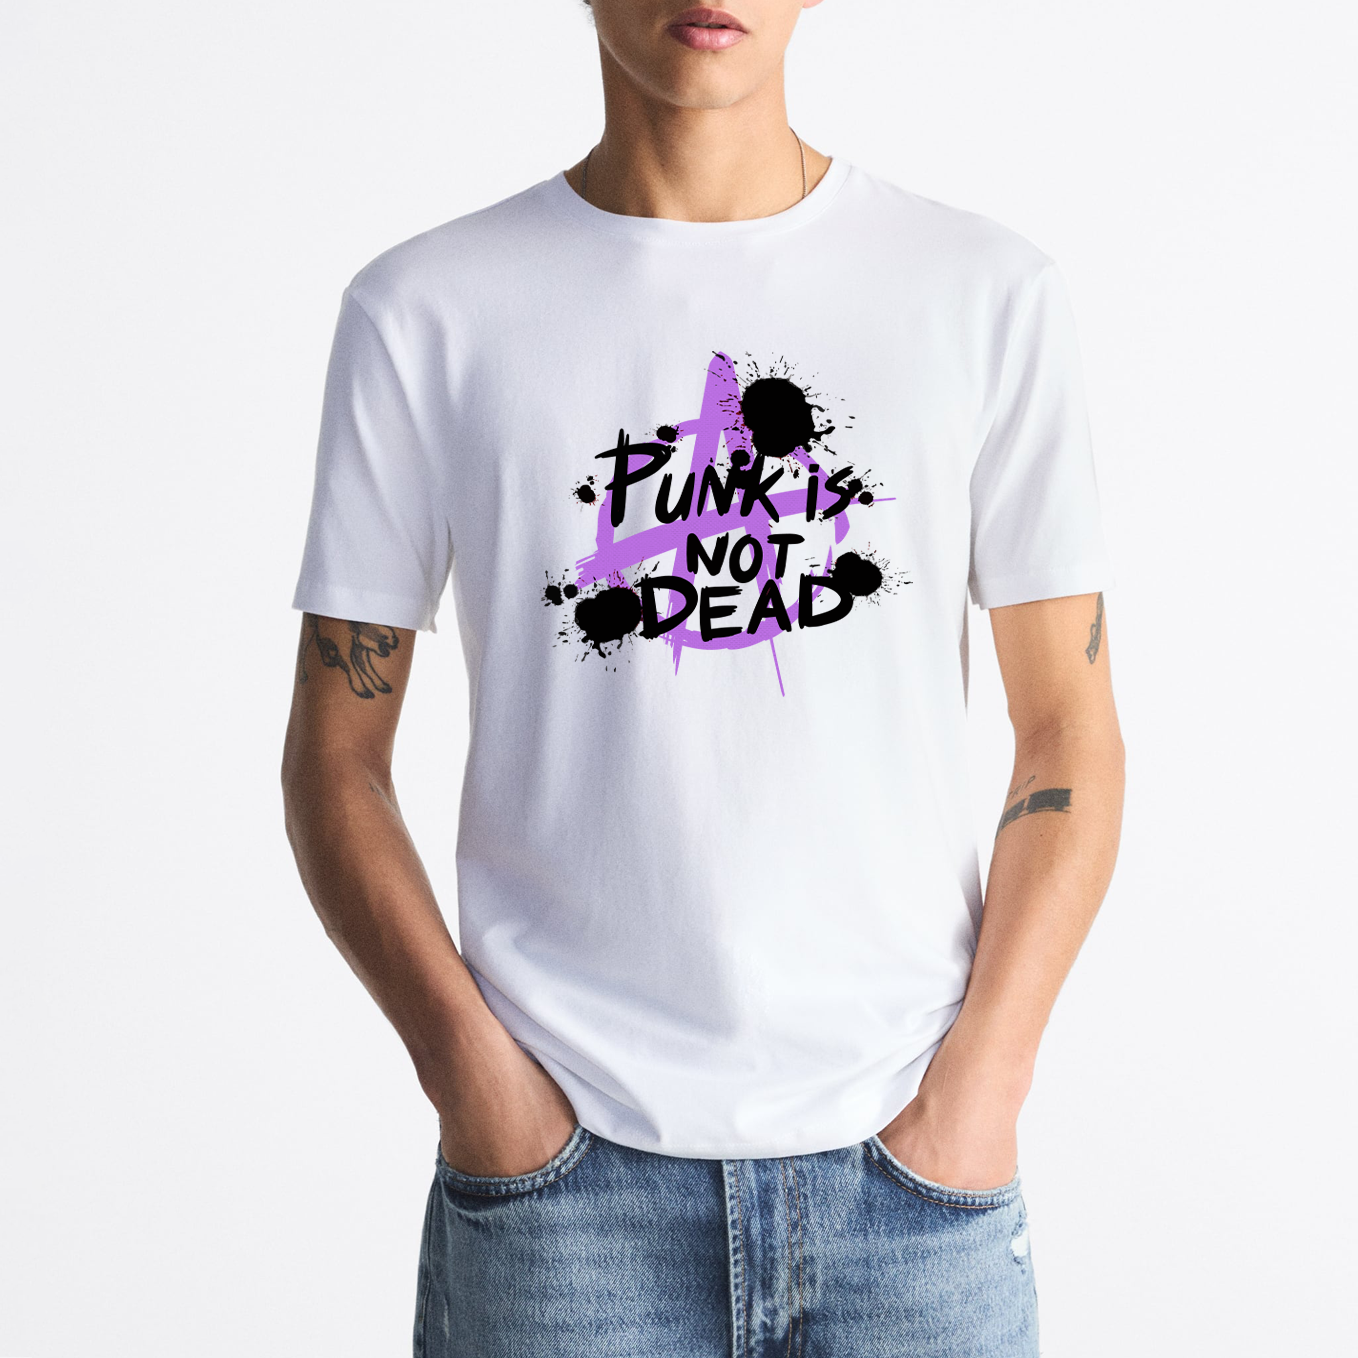 T-shirt "Punk is not Dead"